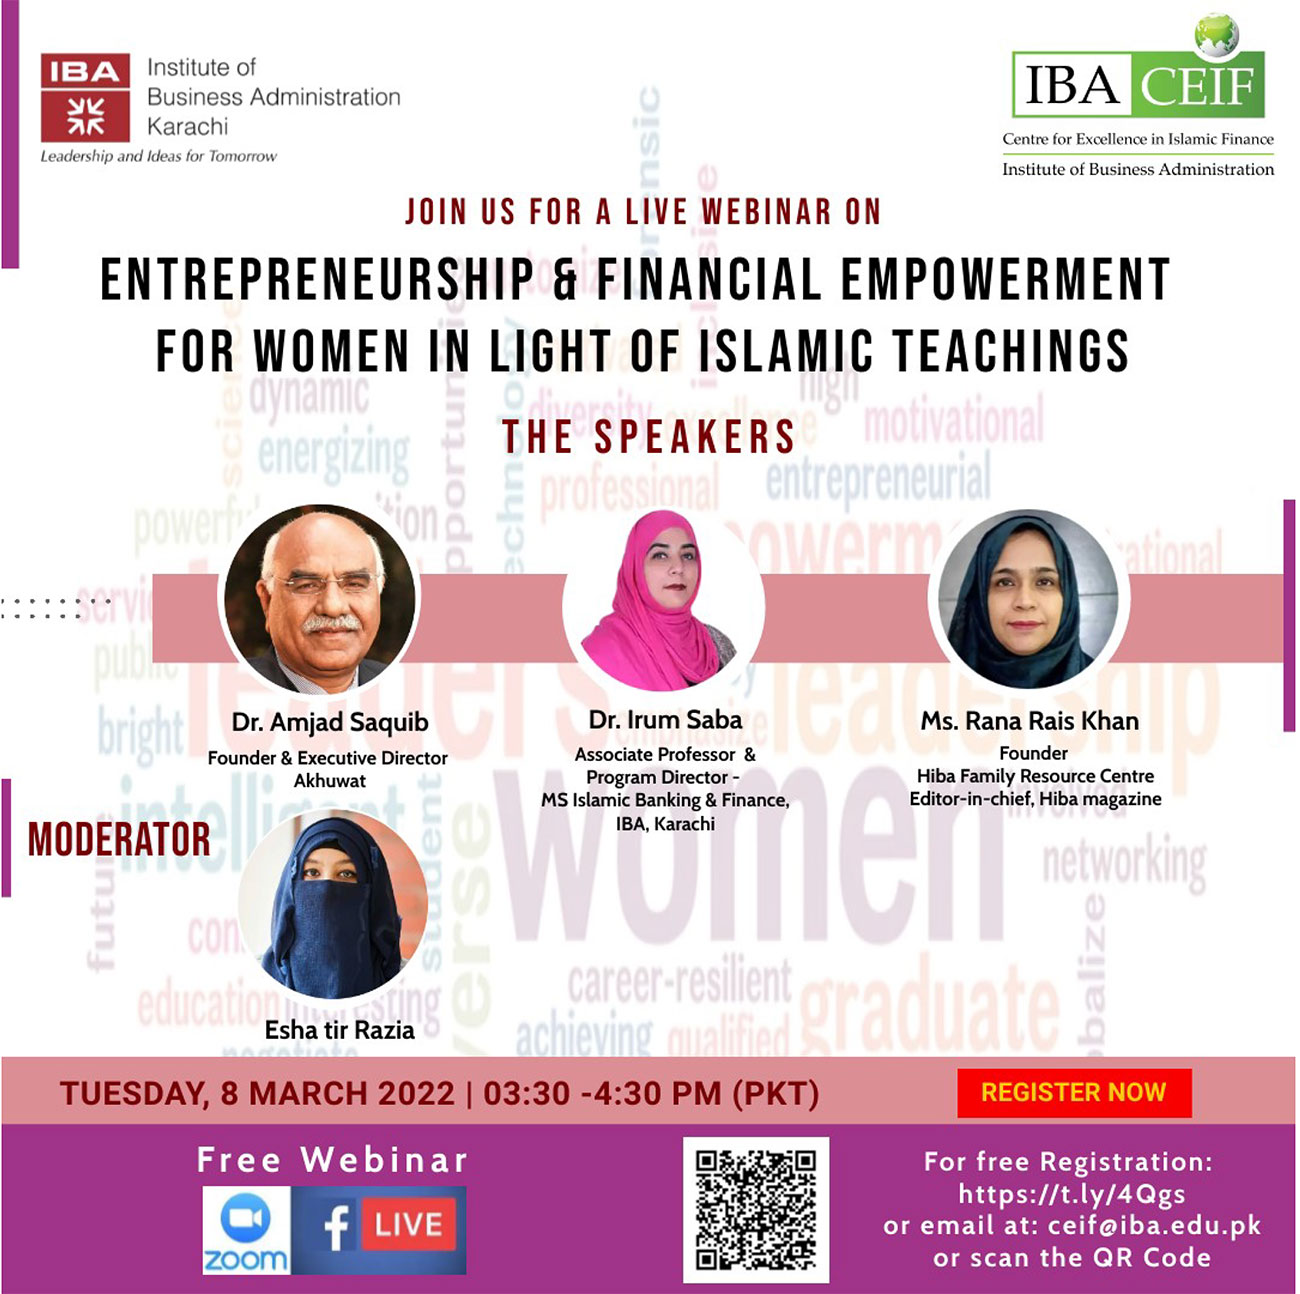 Entrepreneurship & Financial Empowerment for Women in Light of Islamic Teachings